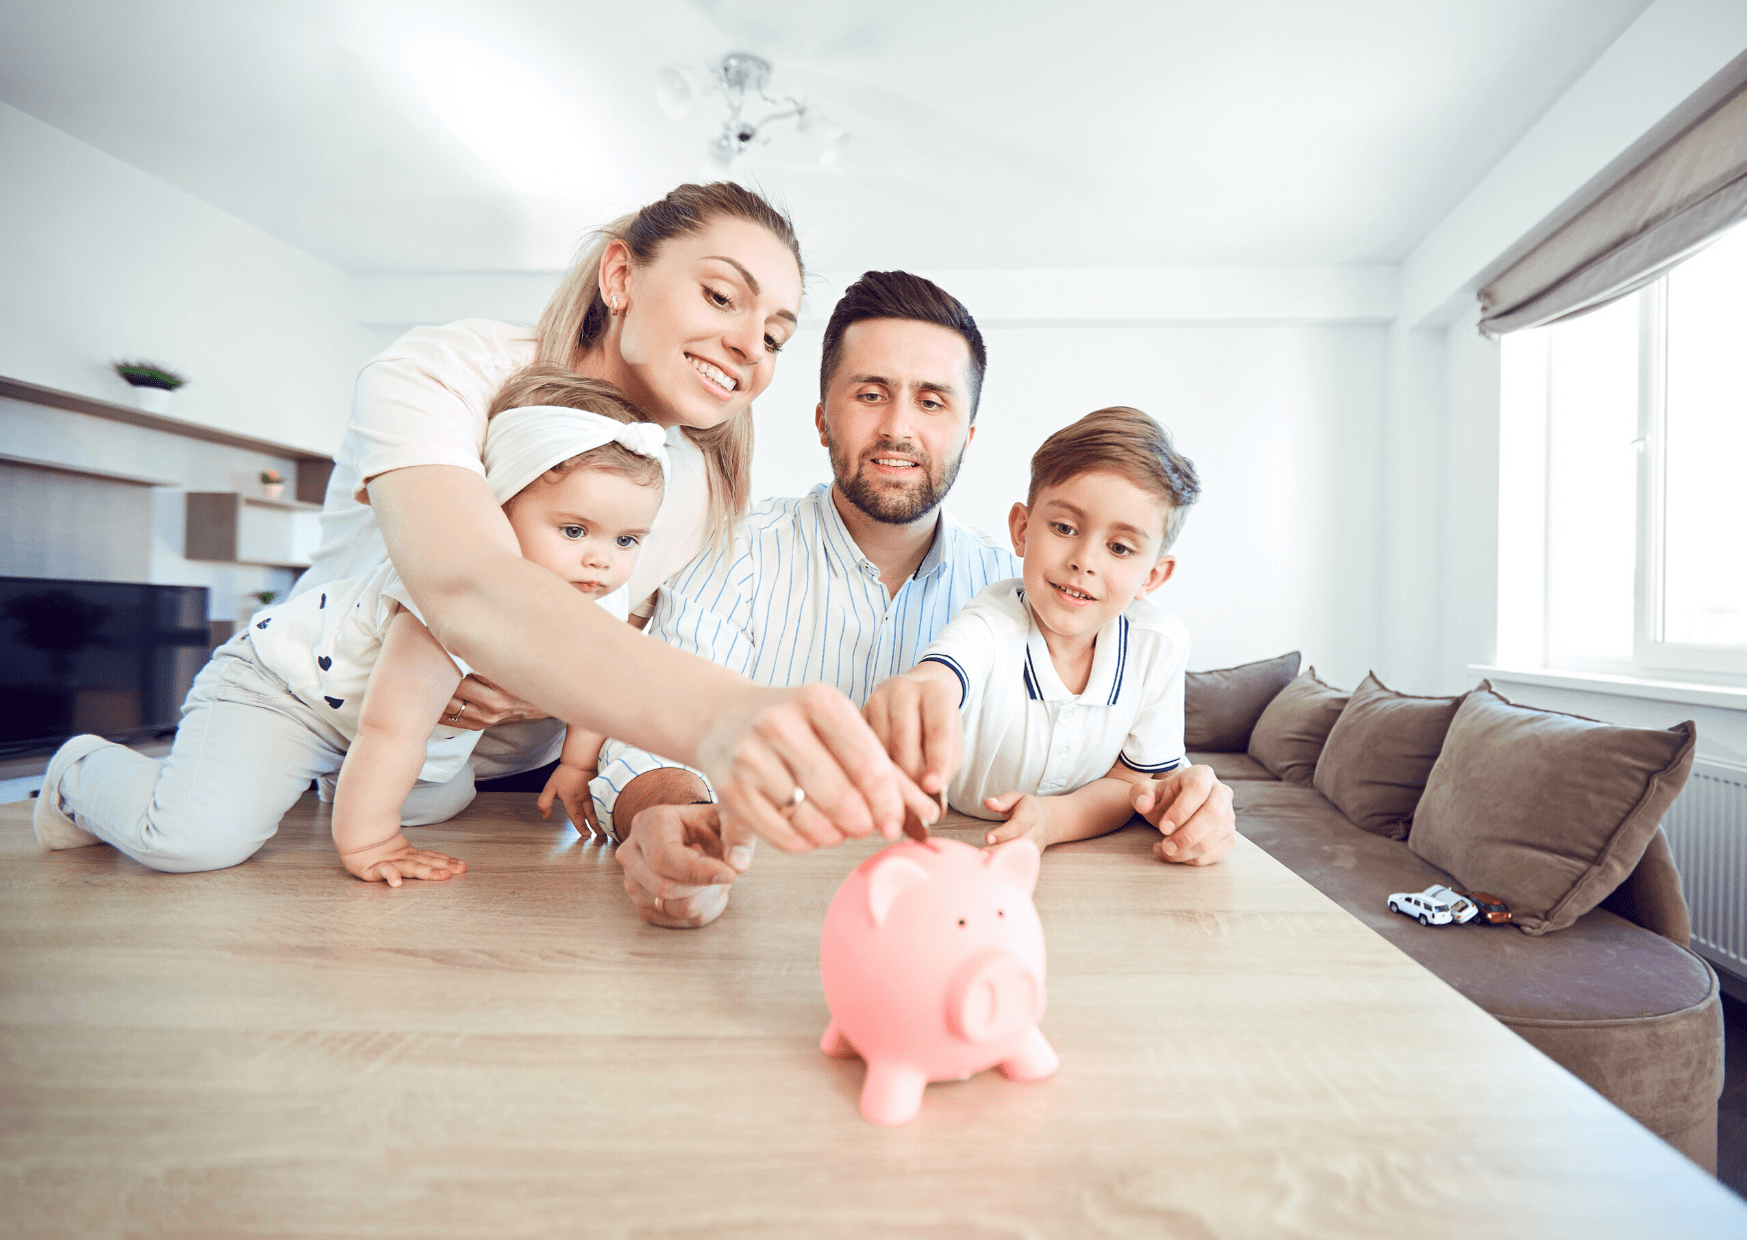 Xây dựng tài chính vững là tiêu chí giúp gia đình hạnh phúc